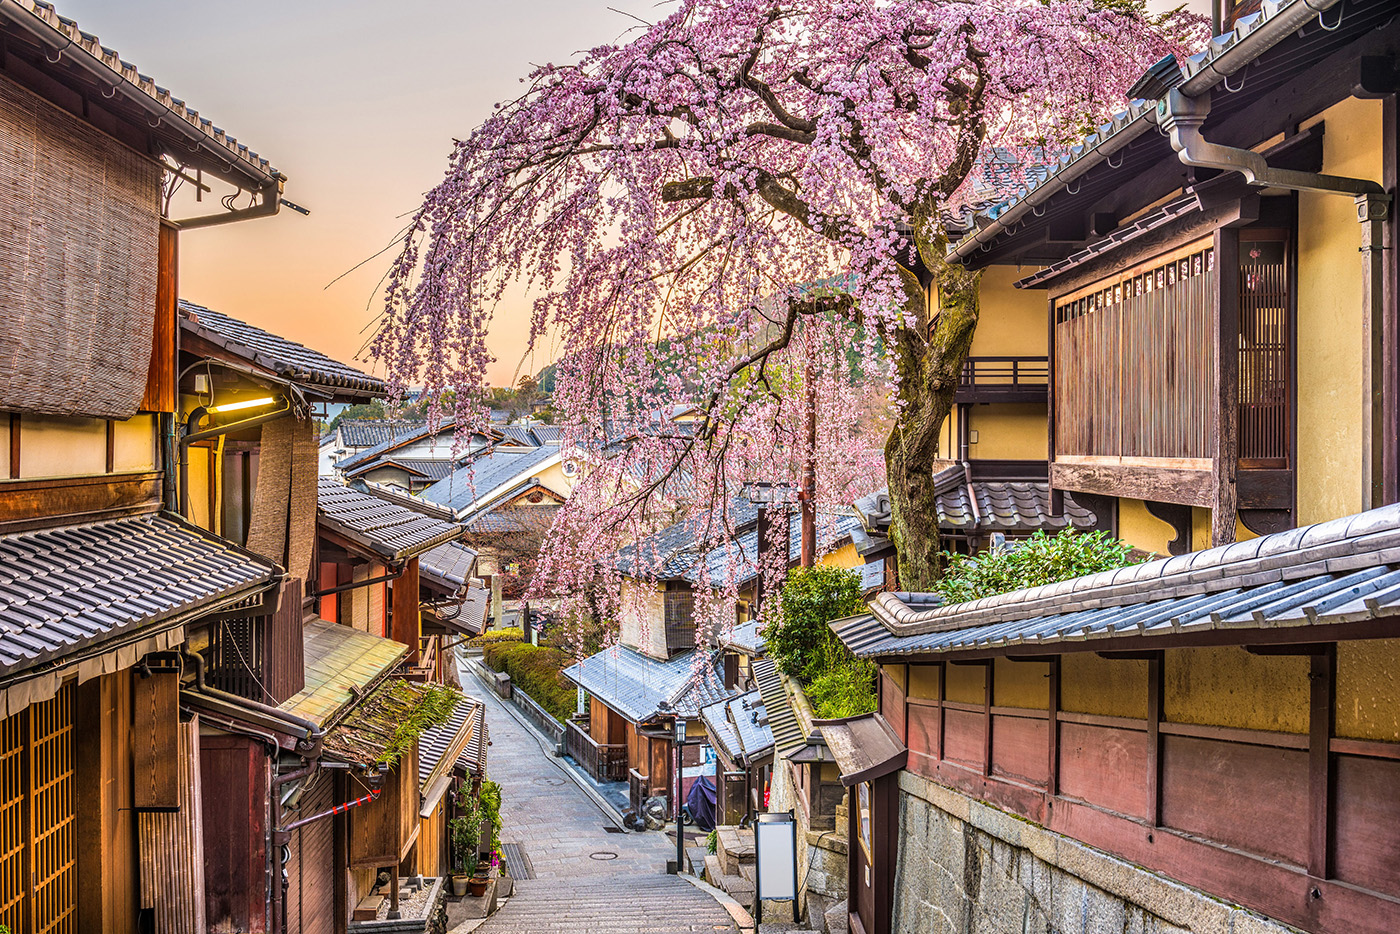 Admirez les cerisiers au milieu des temples, des vastes jardins et des palais impériaux de Kyoto